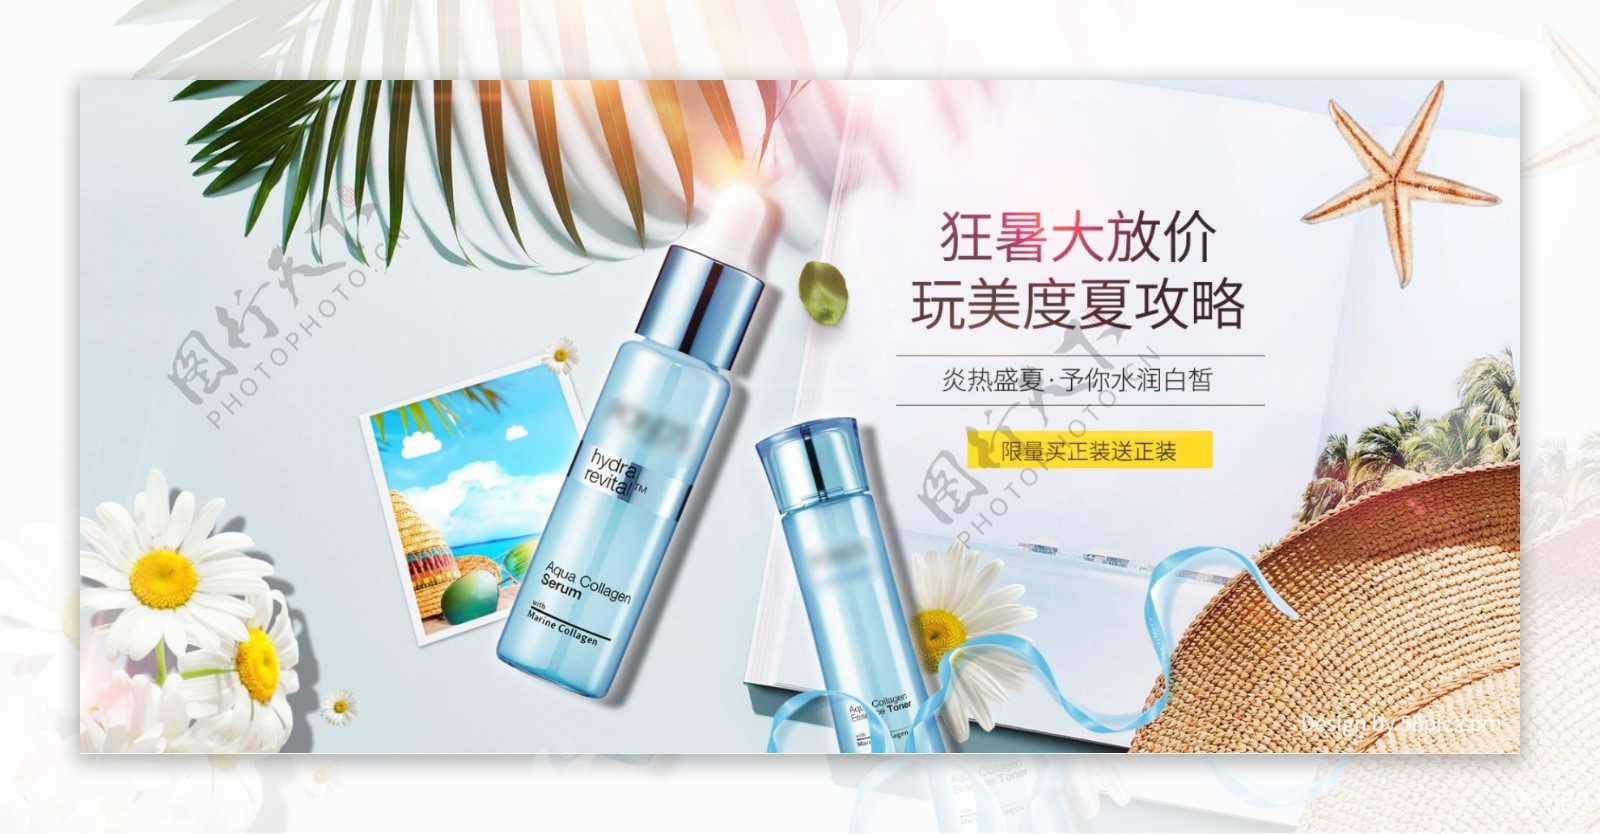 简约小清新夏日狂暑季化妆品促销防晒海报